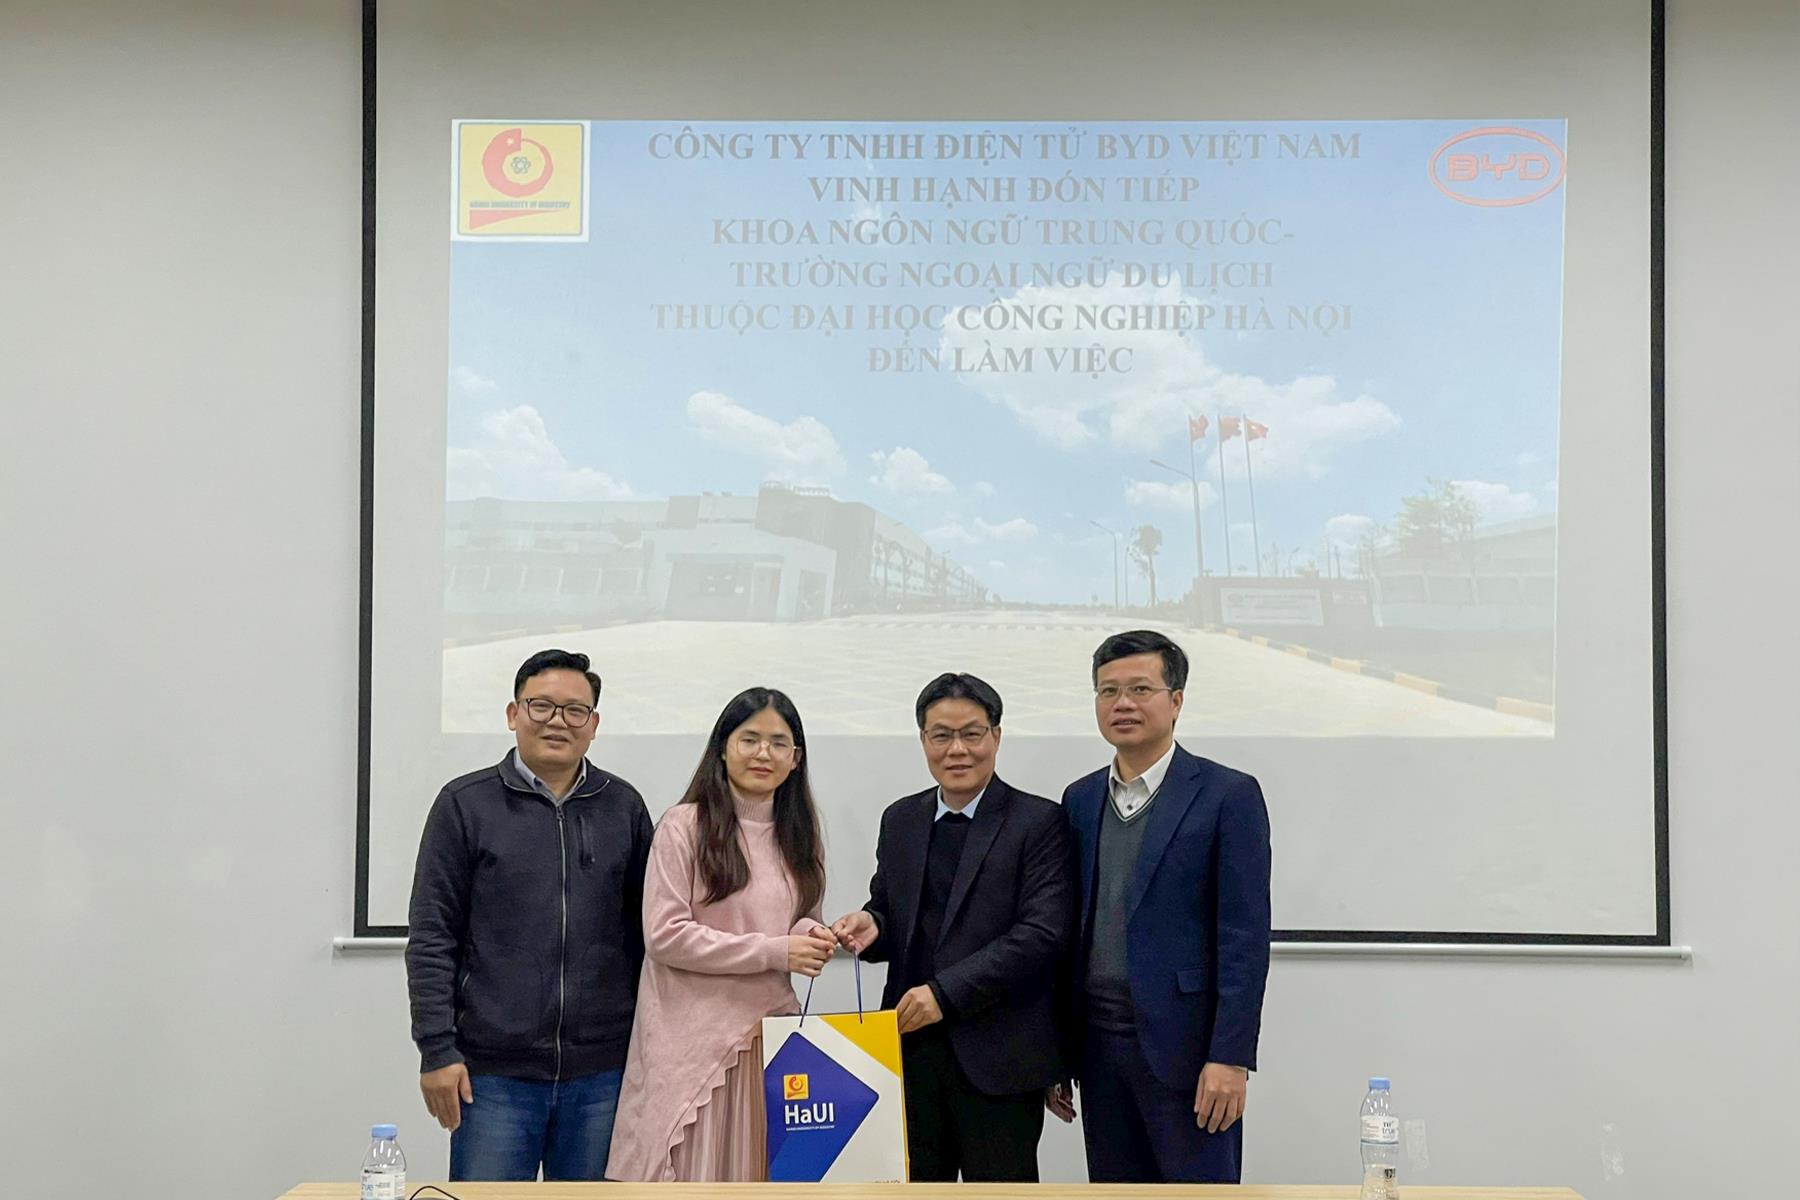 Trường Ngoại ngữ - Du lịch, Trường Đại học Công nghiệp Hà Nội tăng cường mở rộng hợp tác với các doanh nghiệp đầu tư nước ngoài